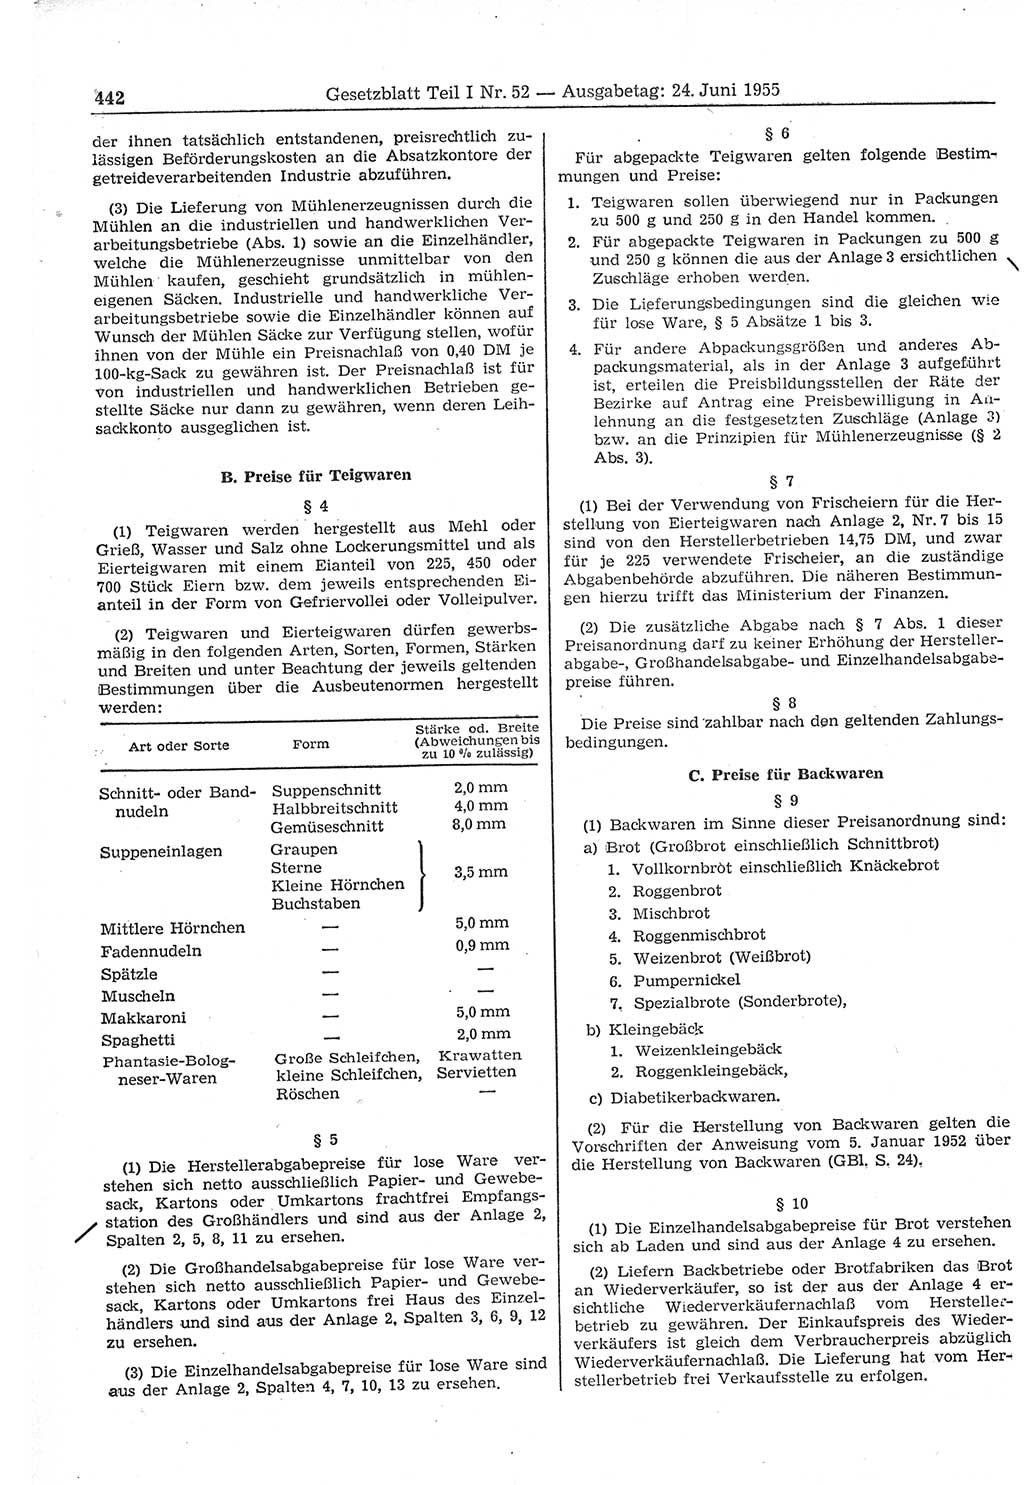 Gesetzblatt (GBl.) der Deutschen Demokratischen Republik (DDR) Teil Ⅰ 1955, Seite 442 (GBl. DDR Ⅰ 1955, S. 442)